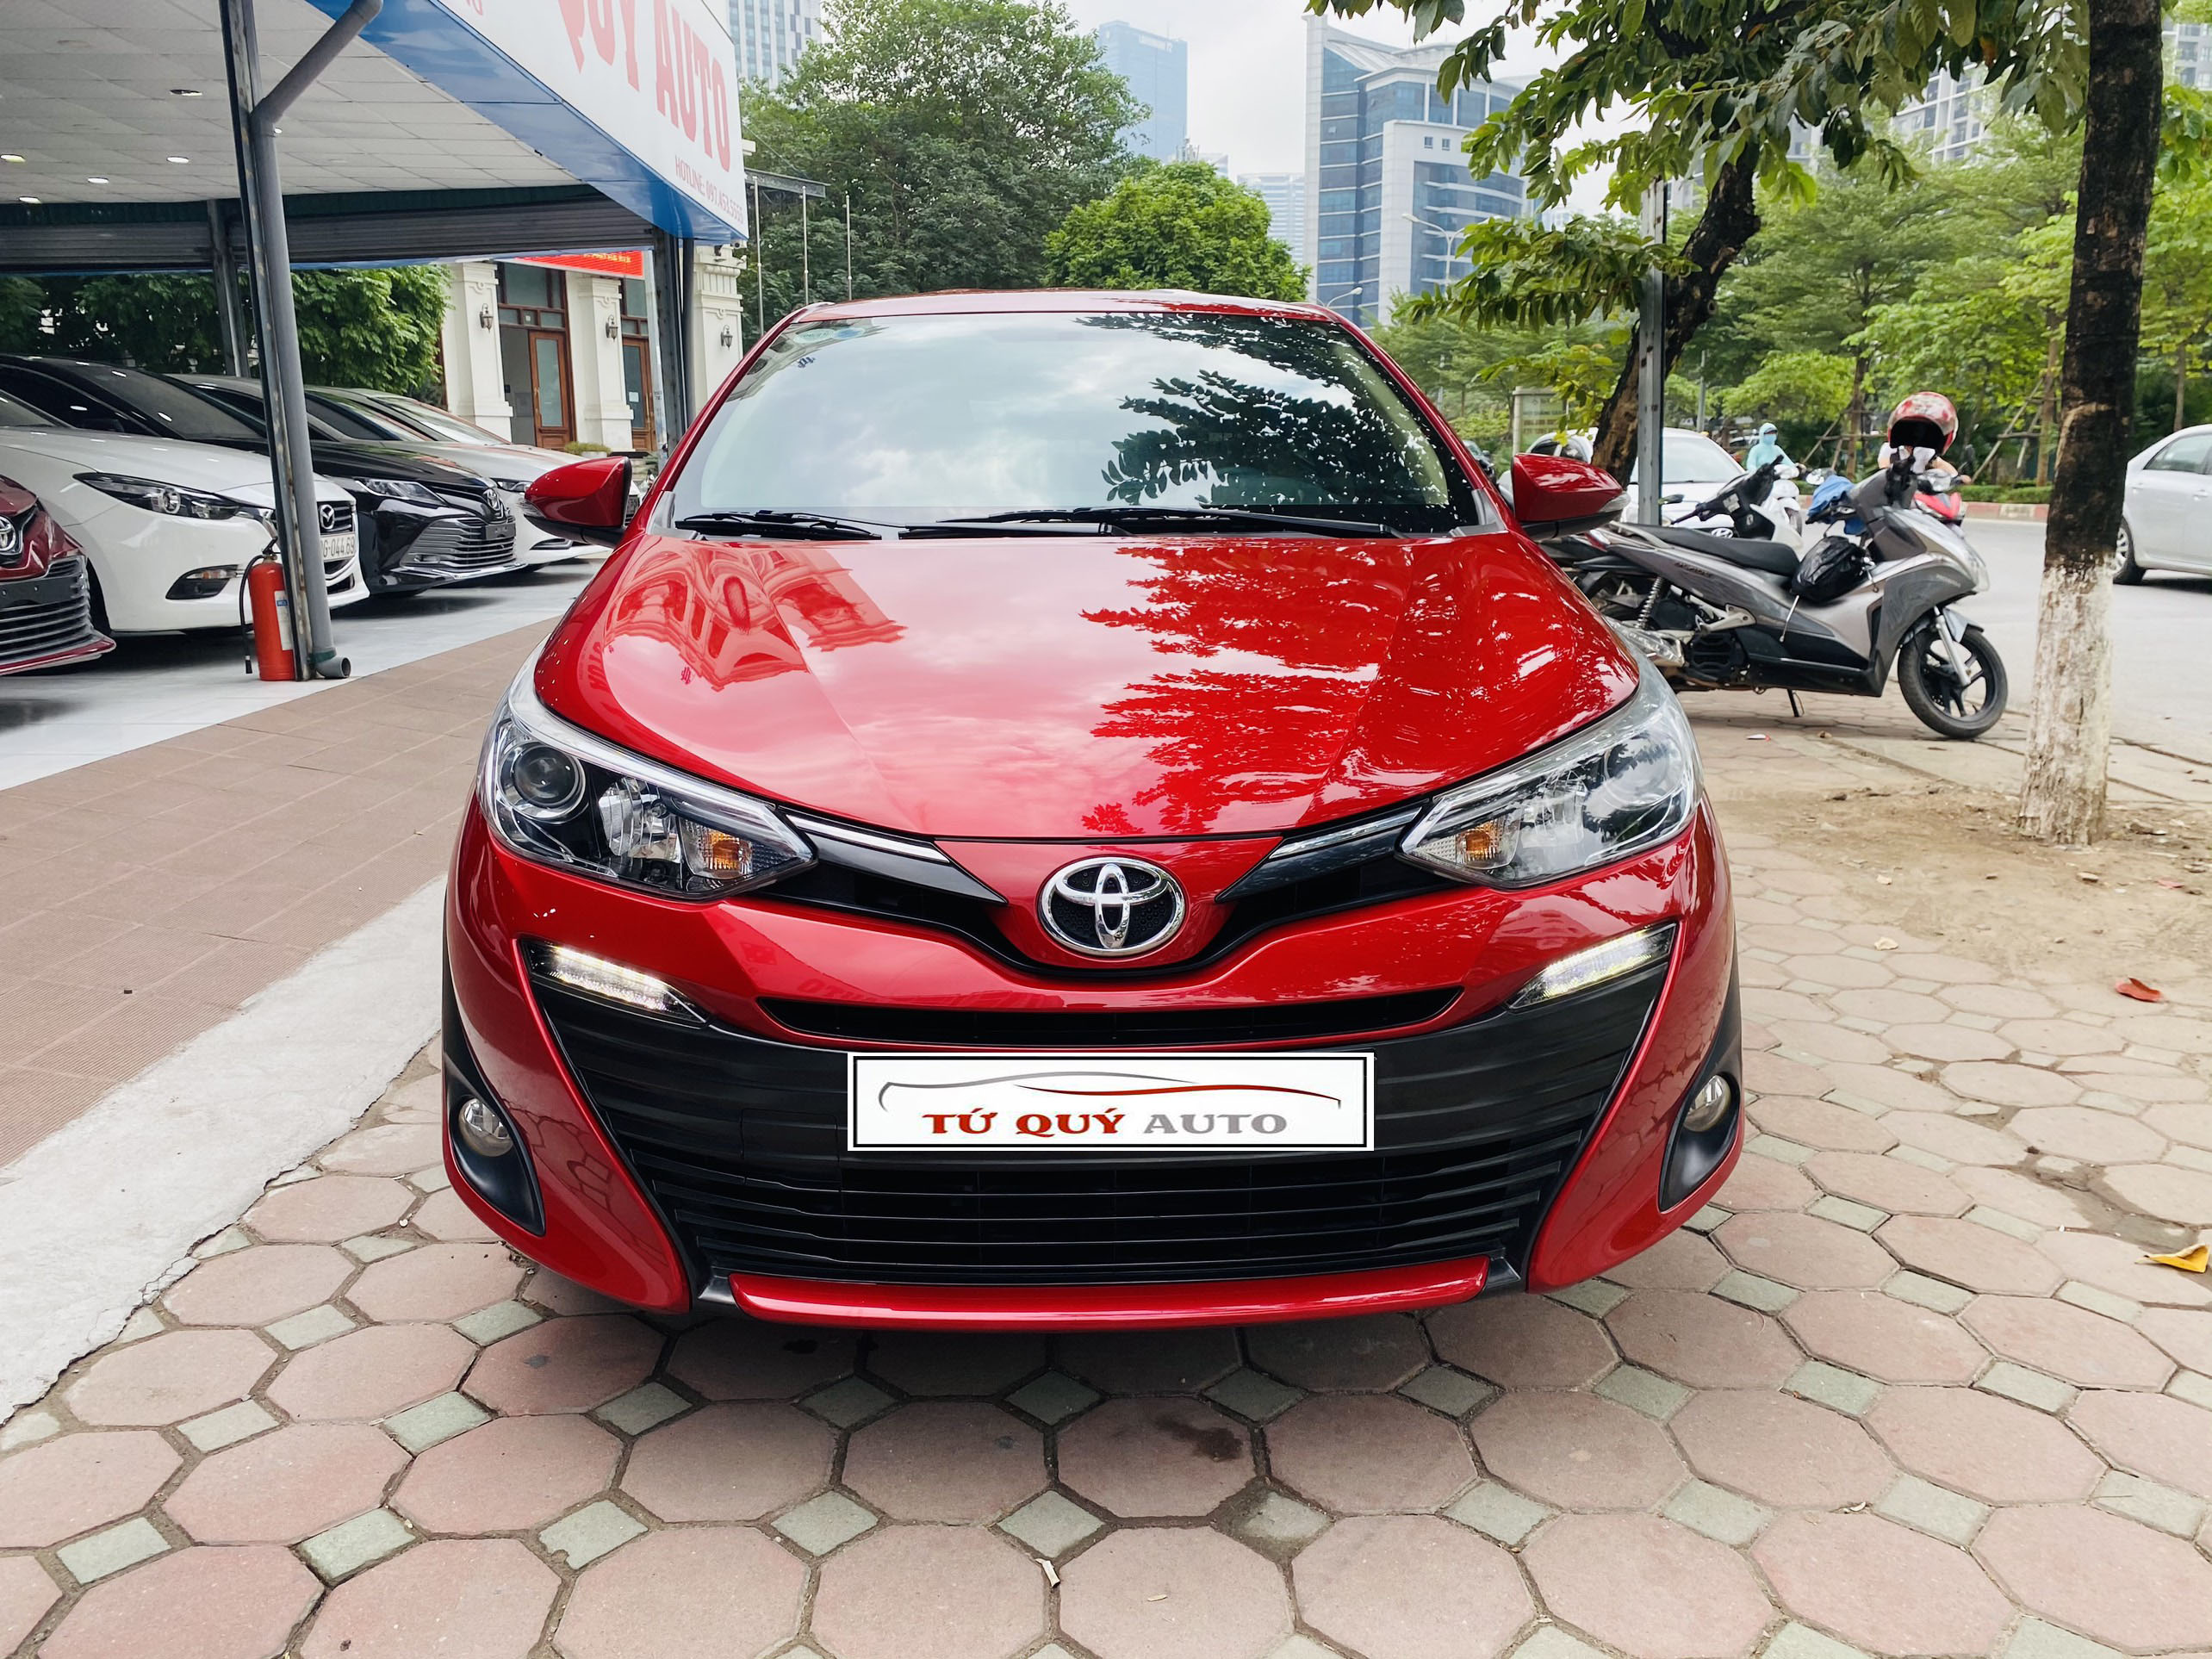 Xe Toyota Vios 15G 2018 tại ATautovn biển Hà Nội  ATautovn Chuyên mua  bán xe ô tô cũ đã qua sử dụng tất cả các hãng xe ô tô